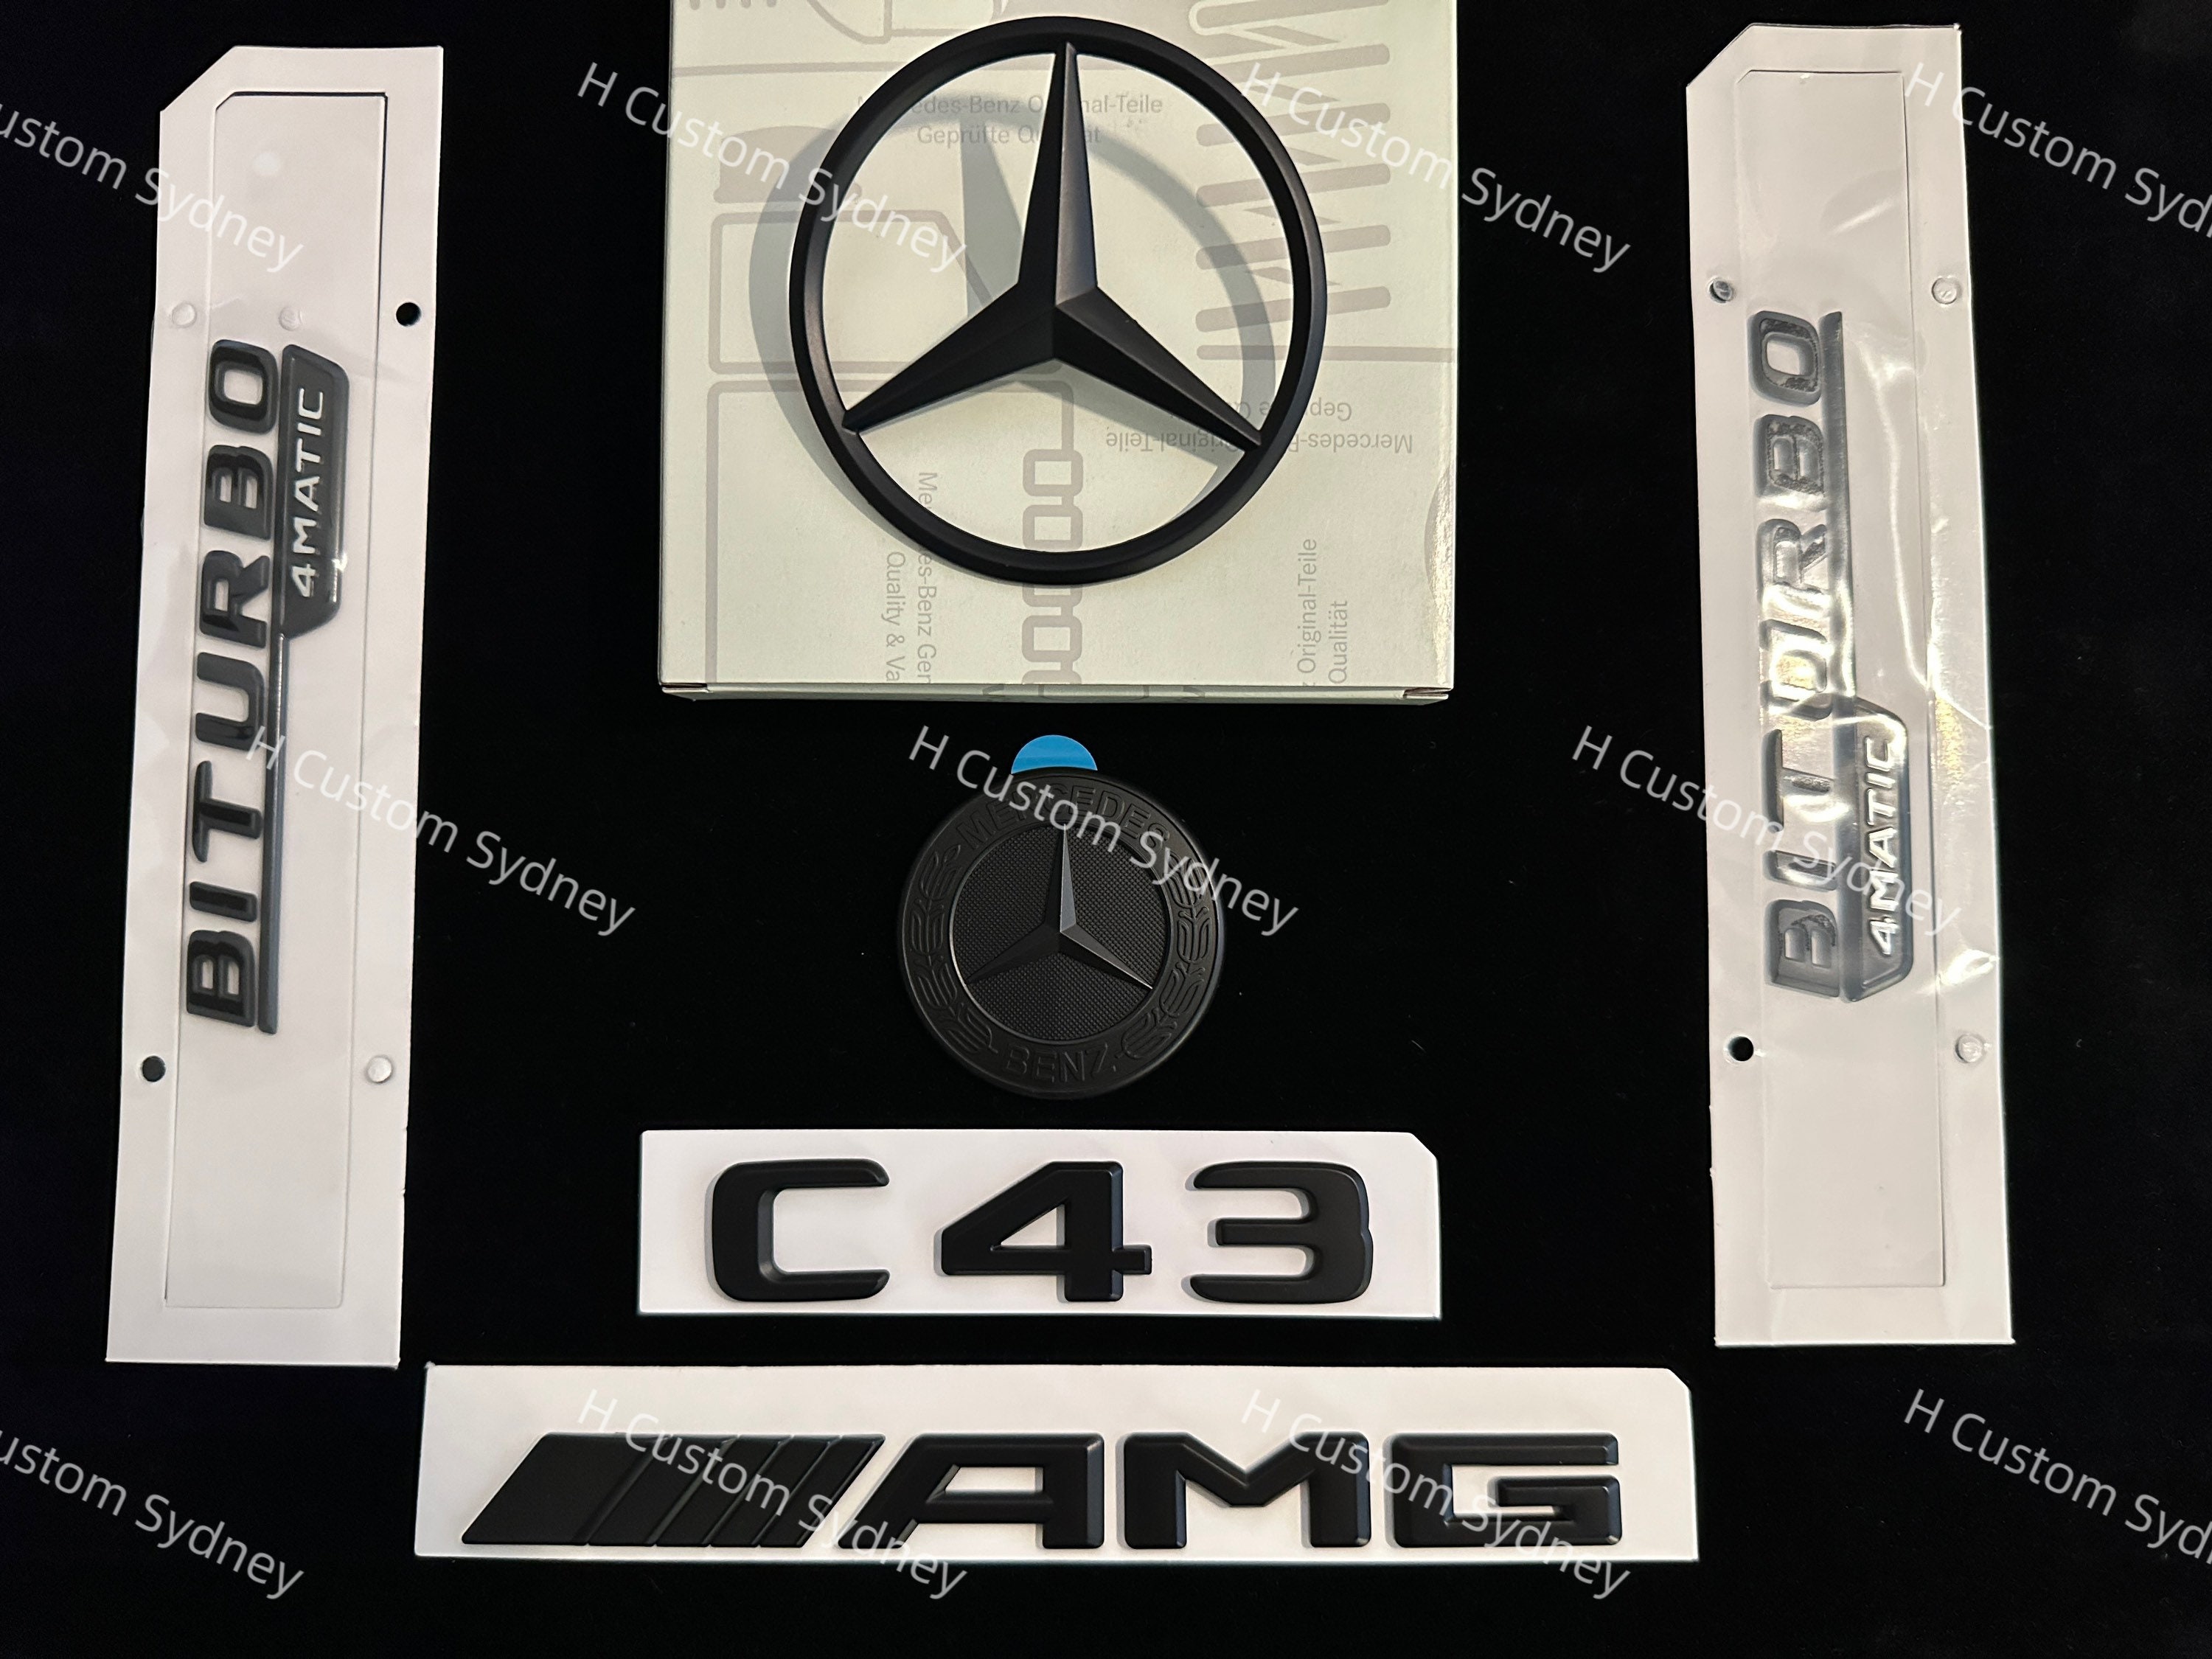 Mercedes AMG logo emblem till grillen. Passar alla Mercedes